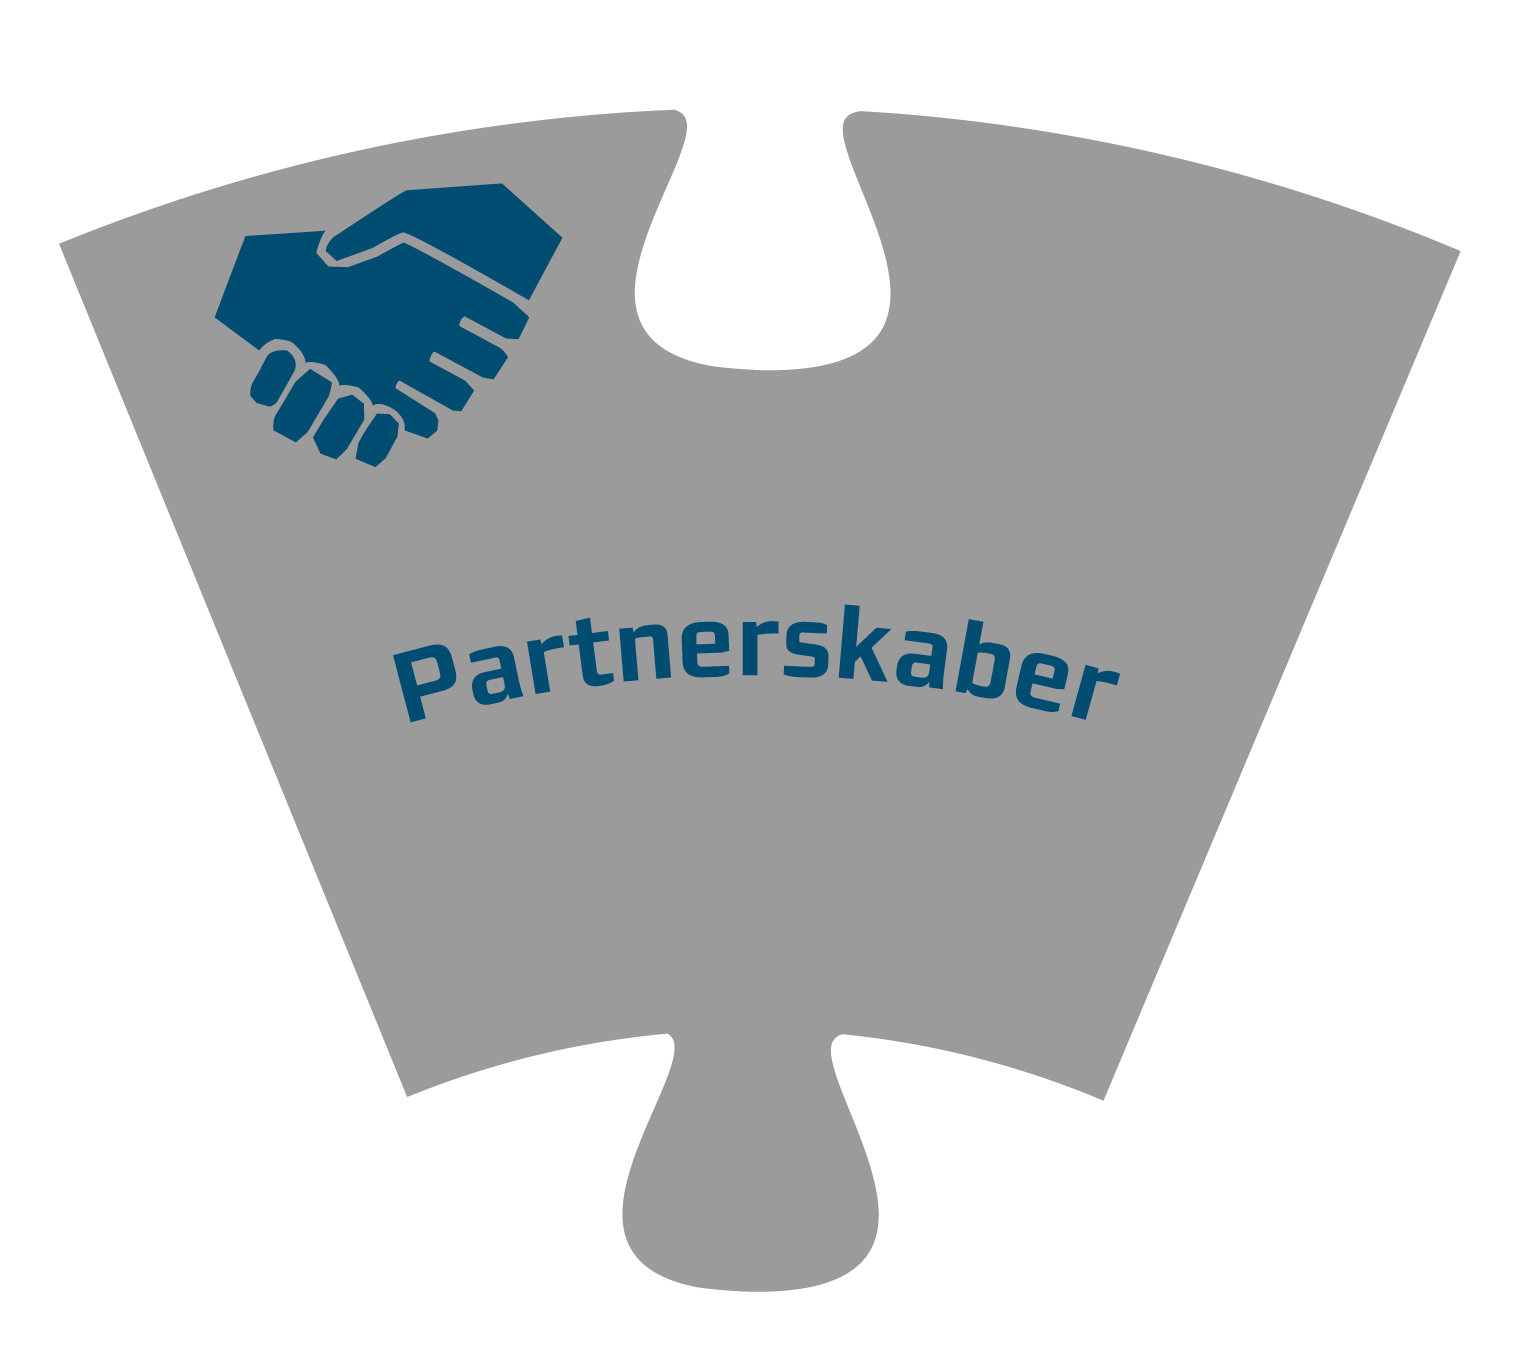 Puslespilsbrik med teksten "Partnerskaber".